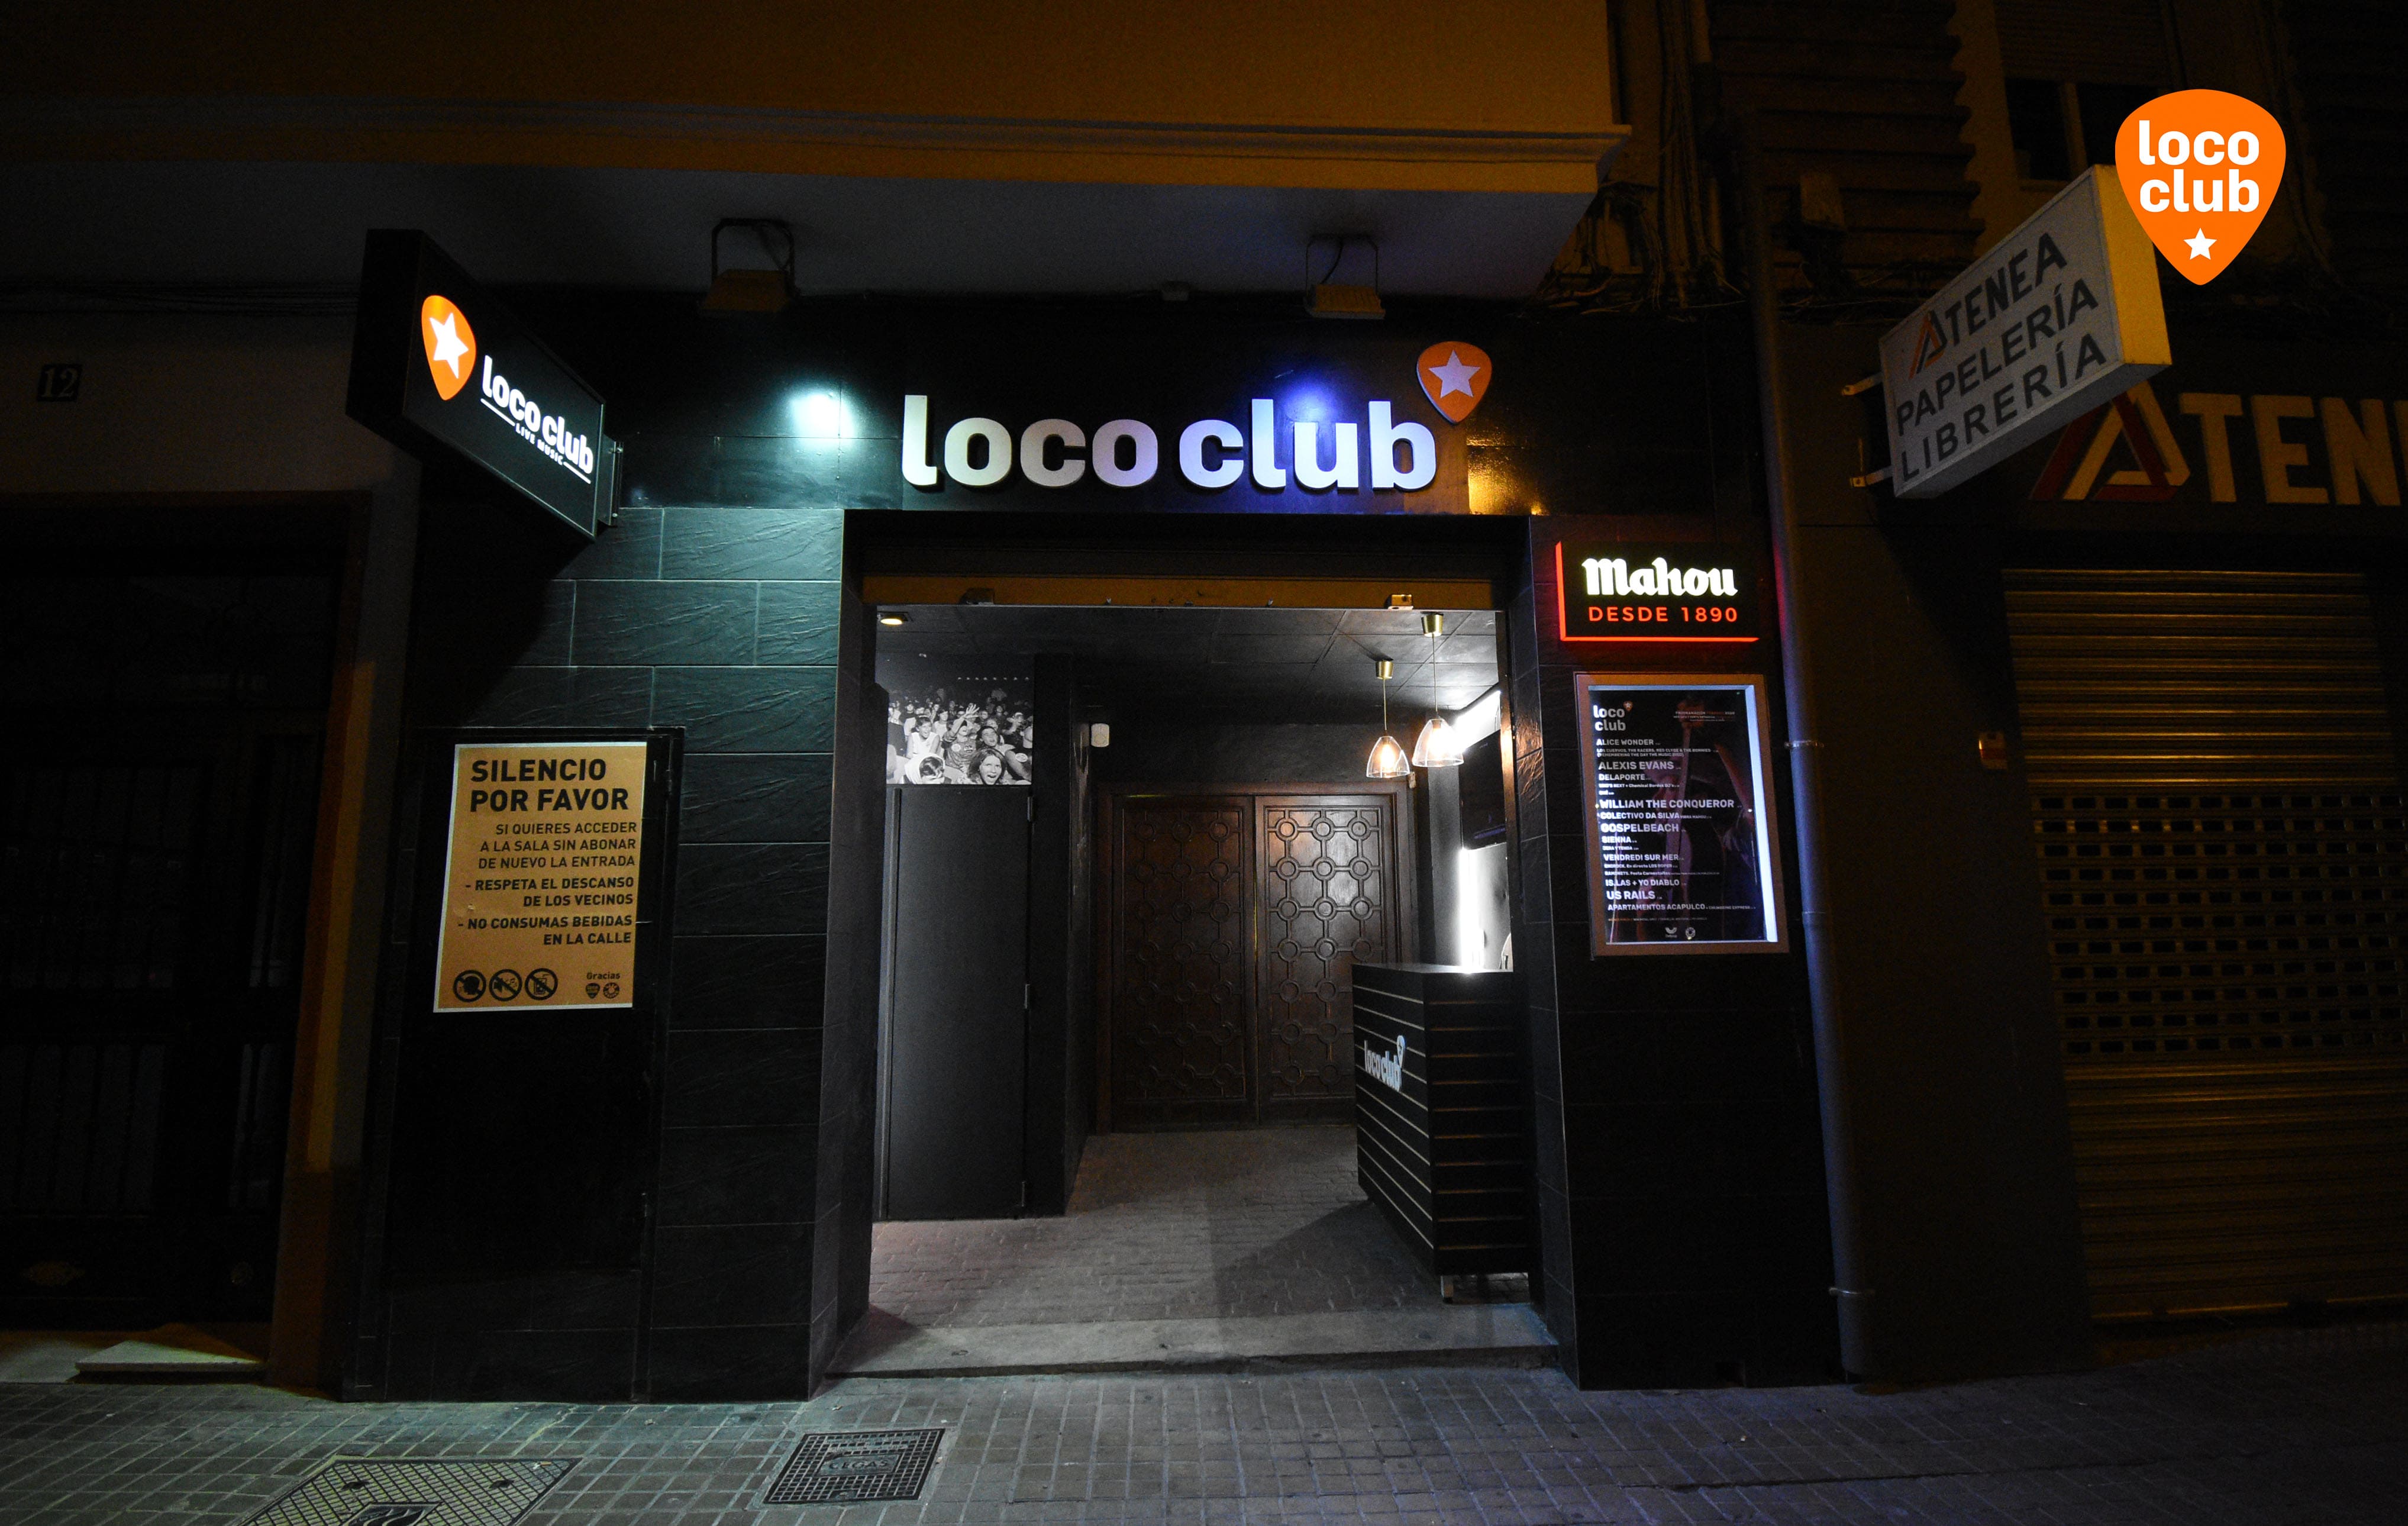 Loco Club